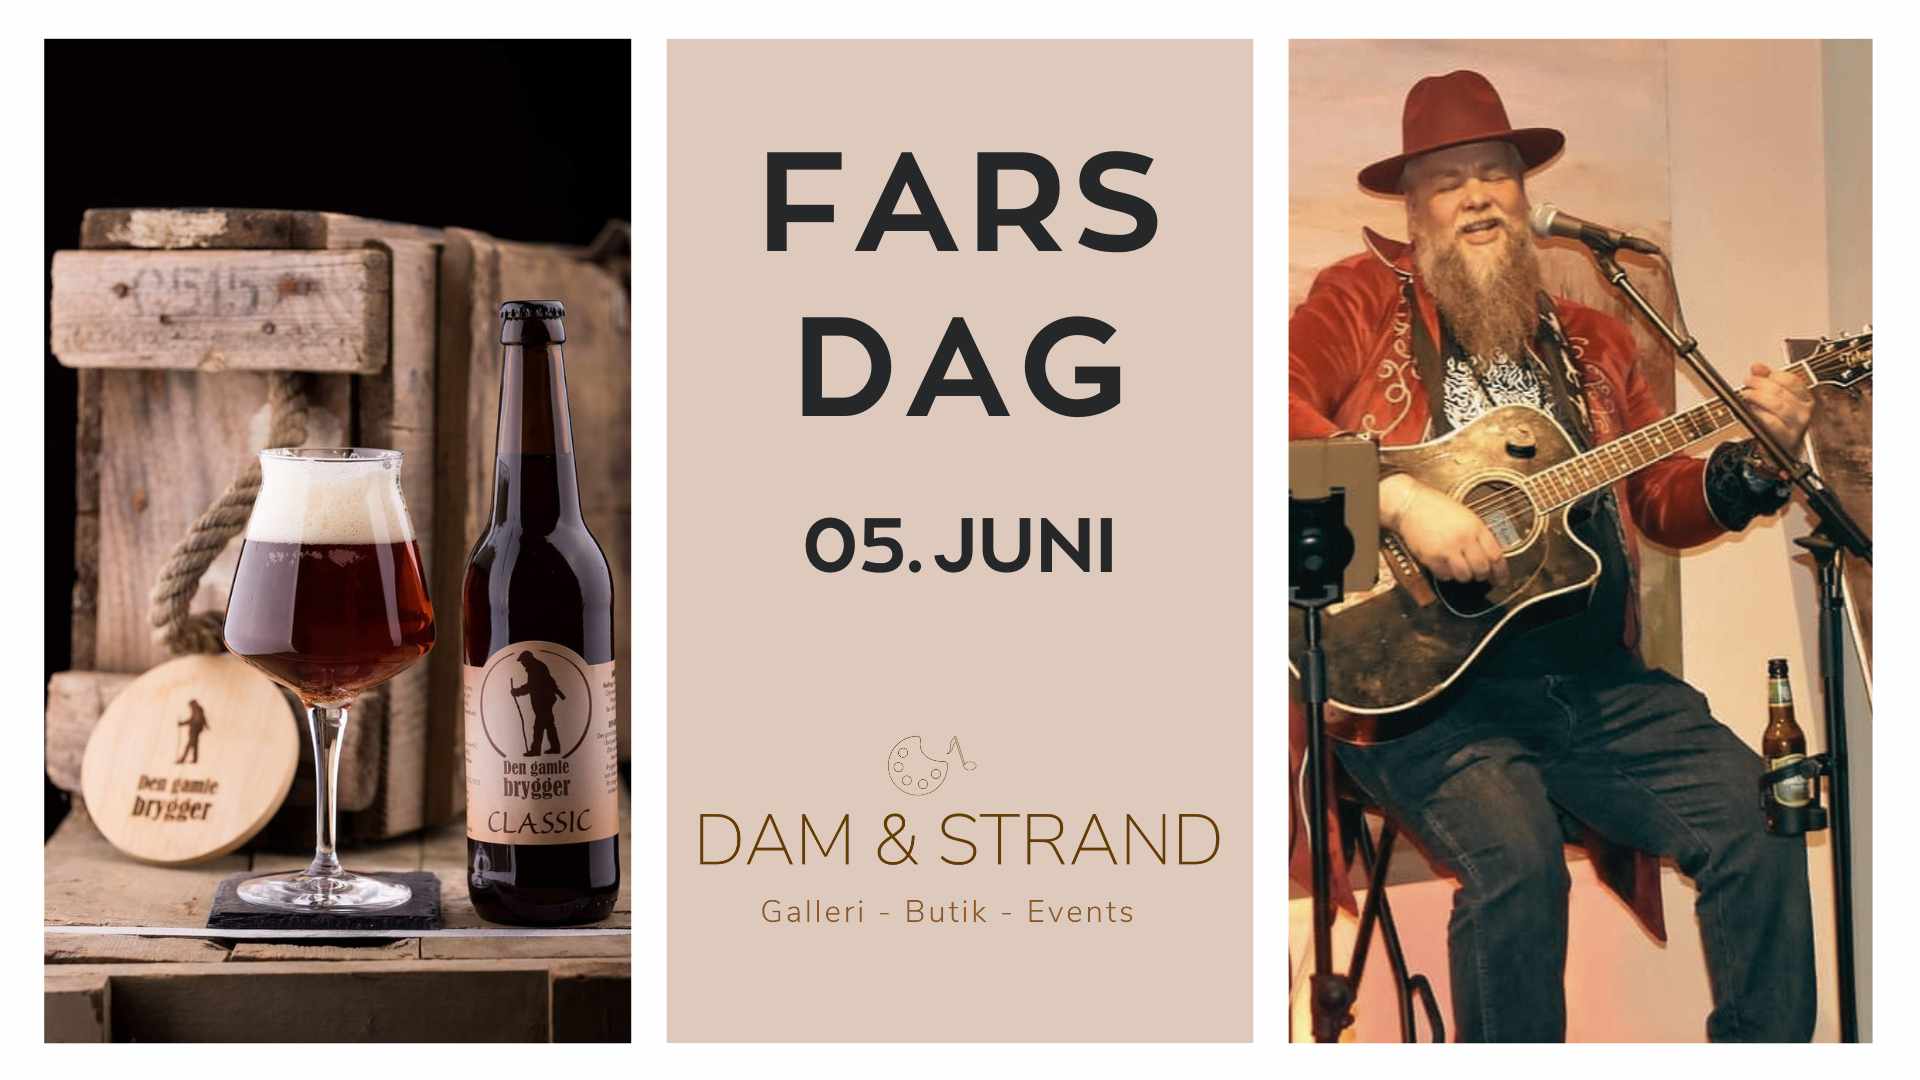 Fars dag 05. Juni - Koncert med Anders Brandt, Ølsmagning og grill.